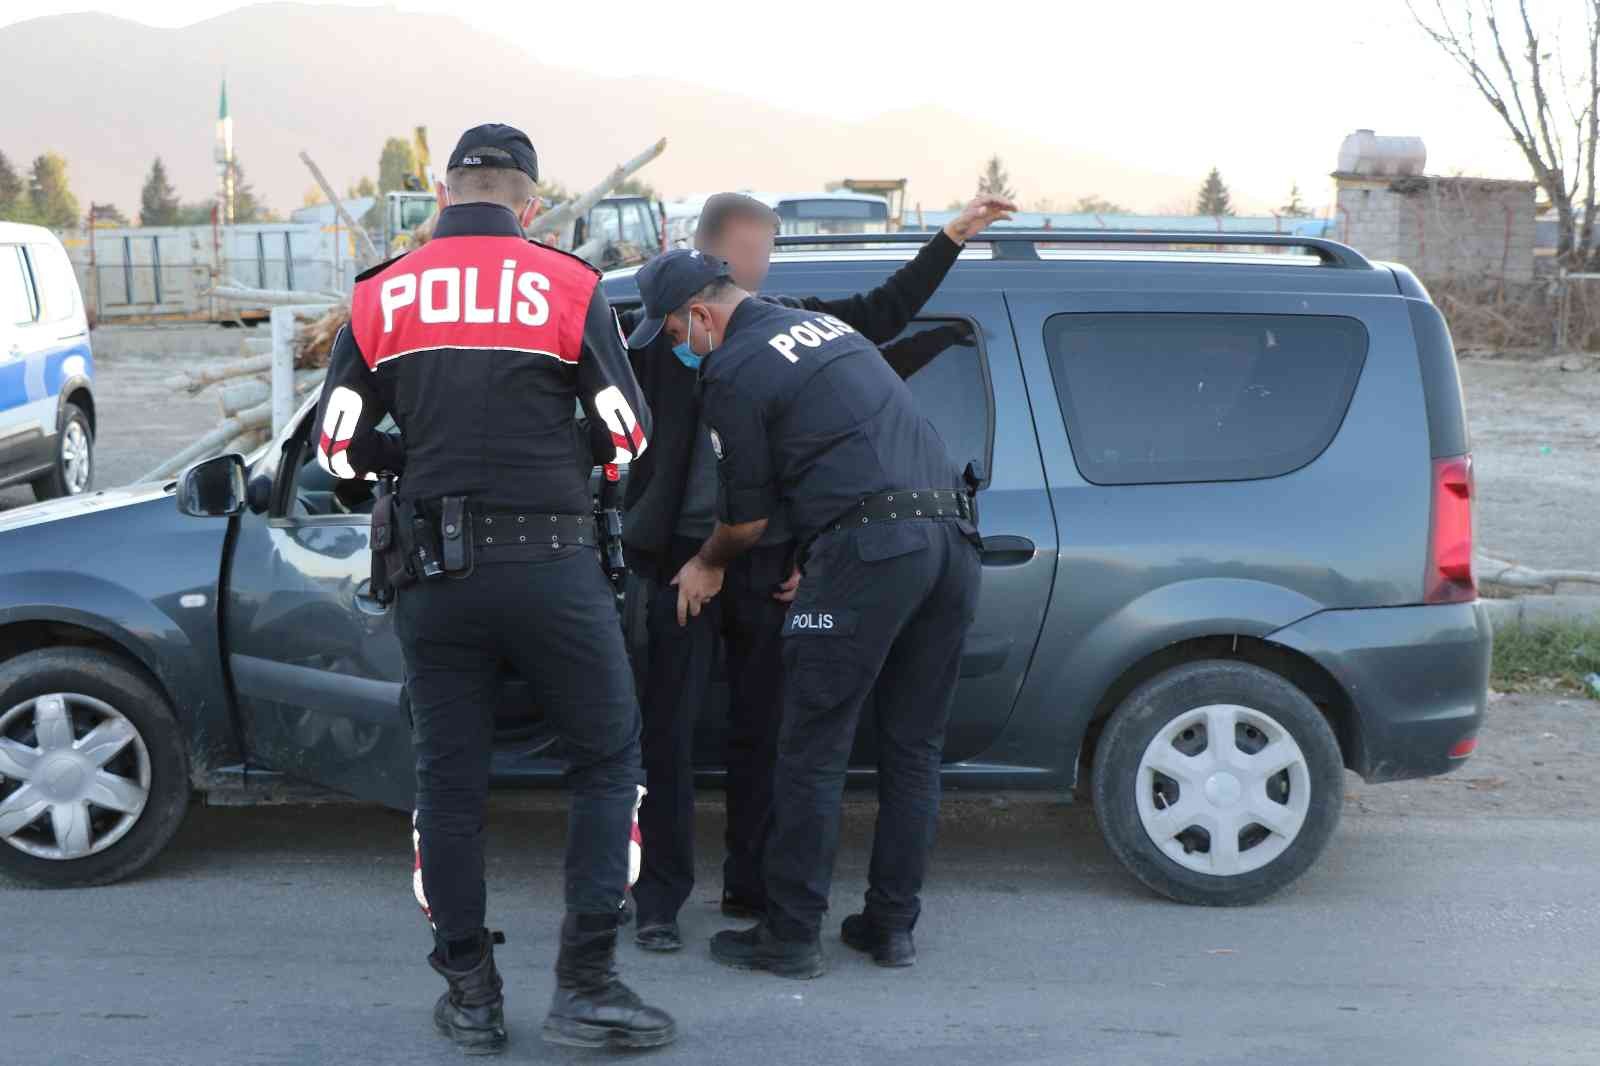 Erzincan’da polisin denetimleri sürüyor #erzincan